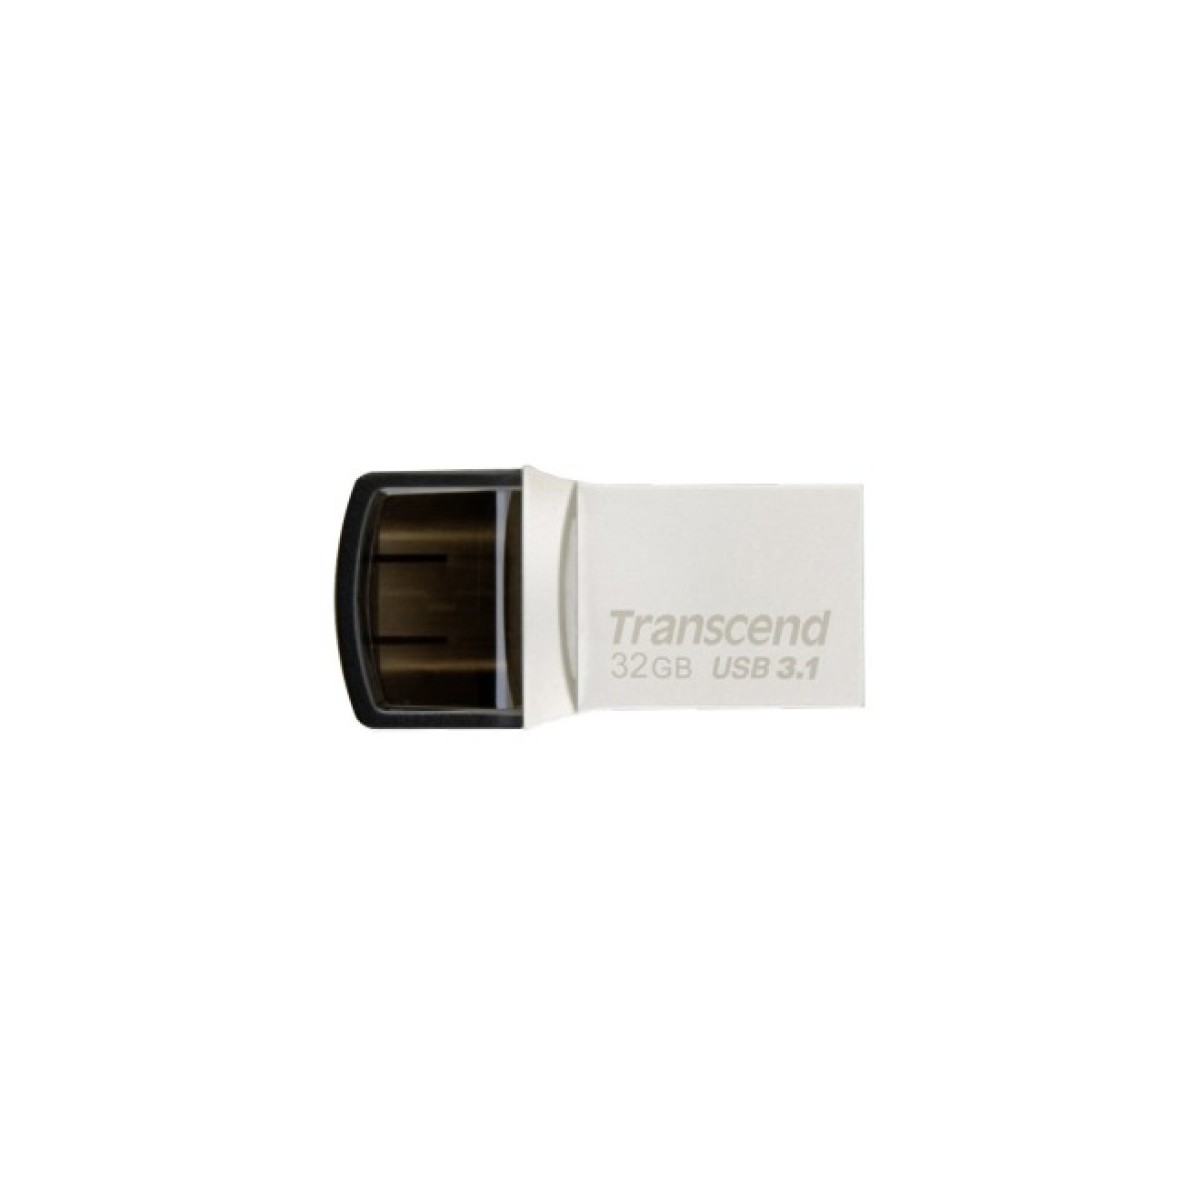 USB флеш накопитель Transcend 32GB JetFlash 890S Silver USB 3.1 (TS32GJF890S) 256_256.jpg